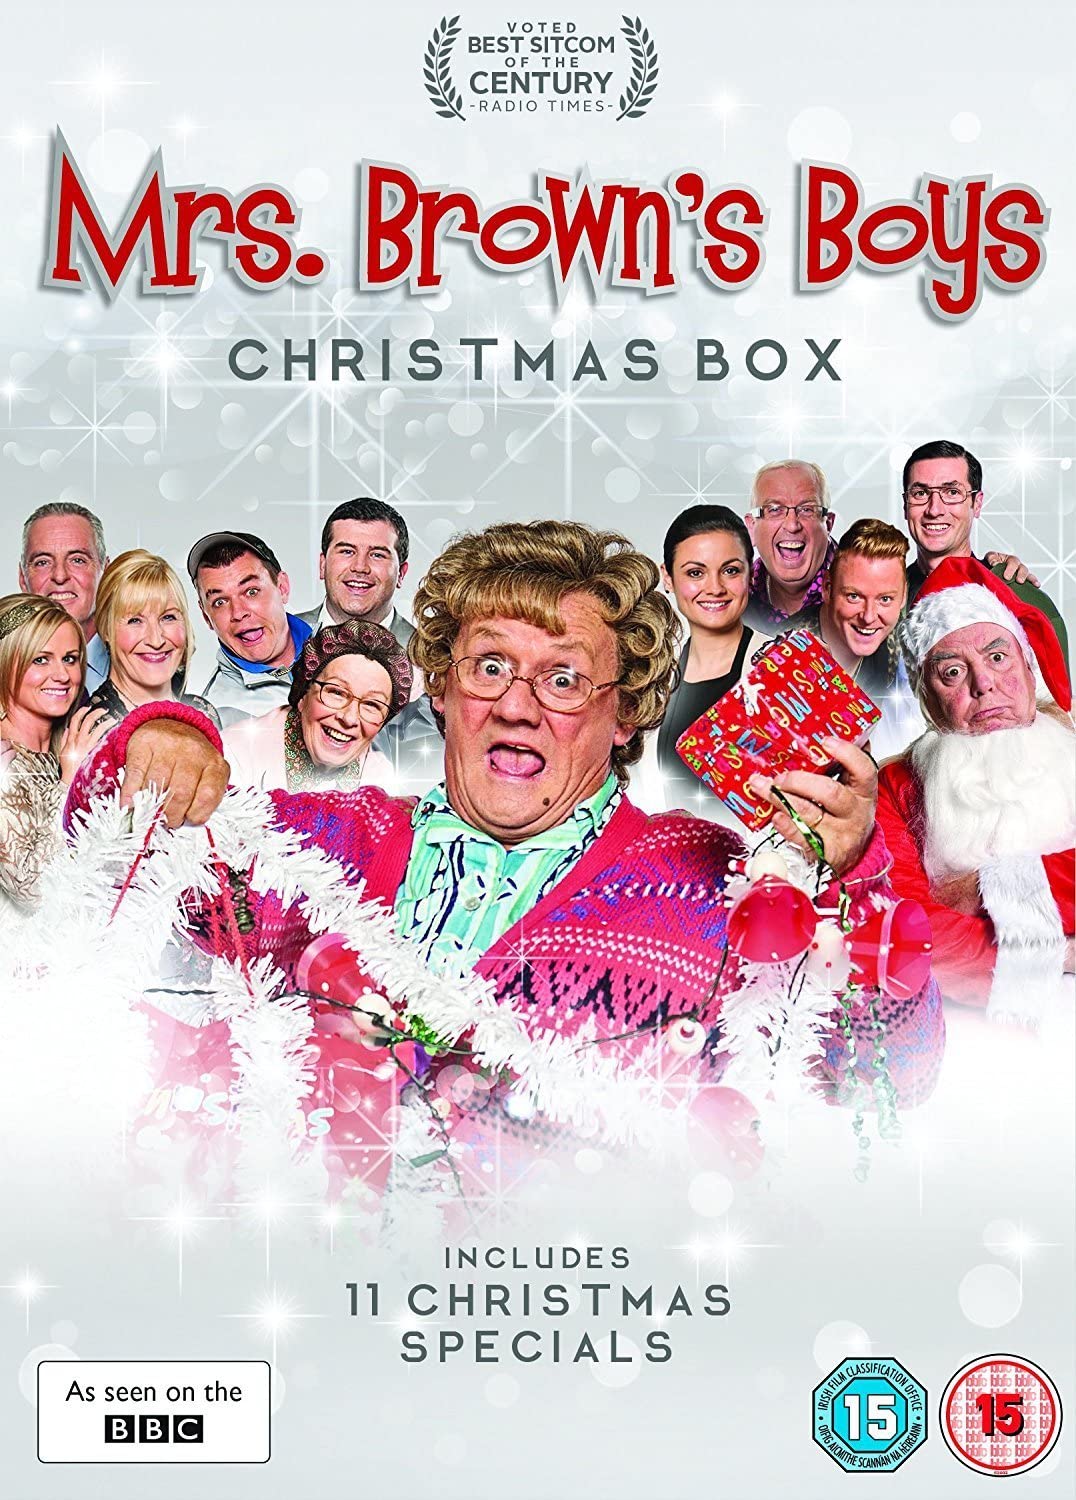 Mrs. Brown’s Boys - Christmas Box [2017] - Sitcom [DVD]